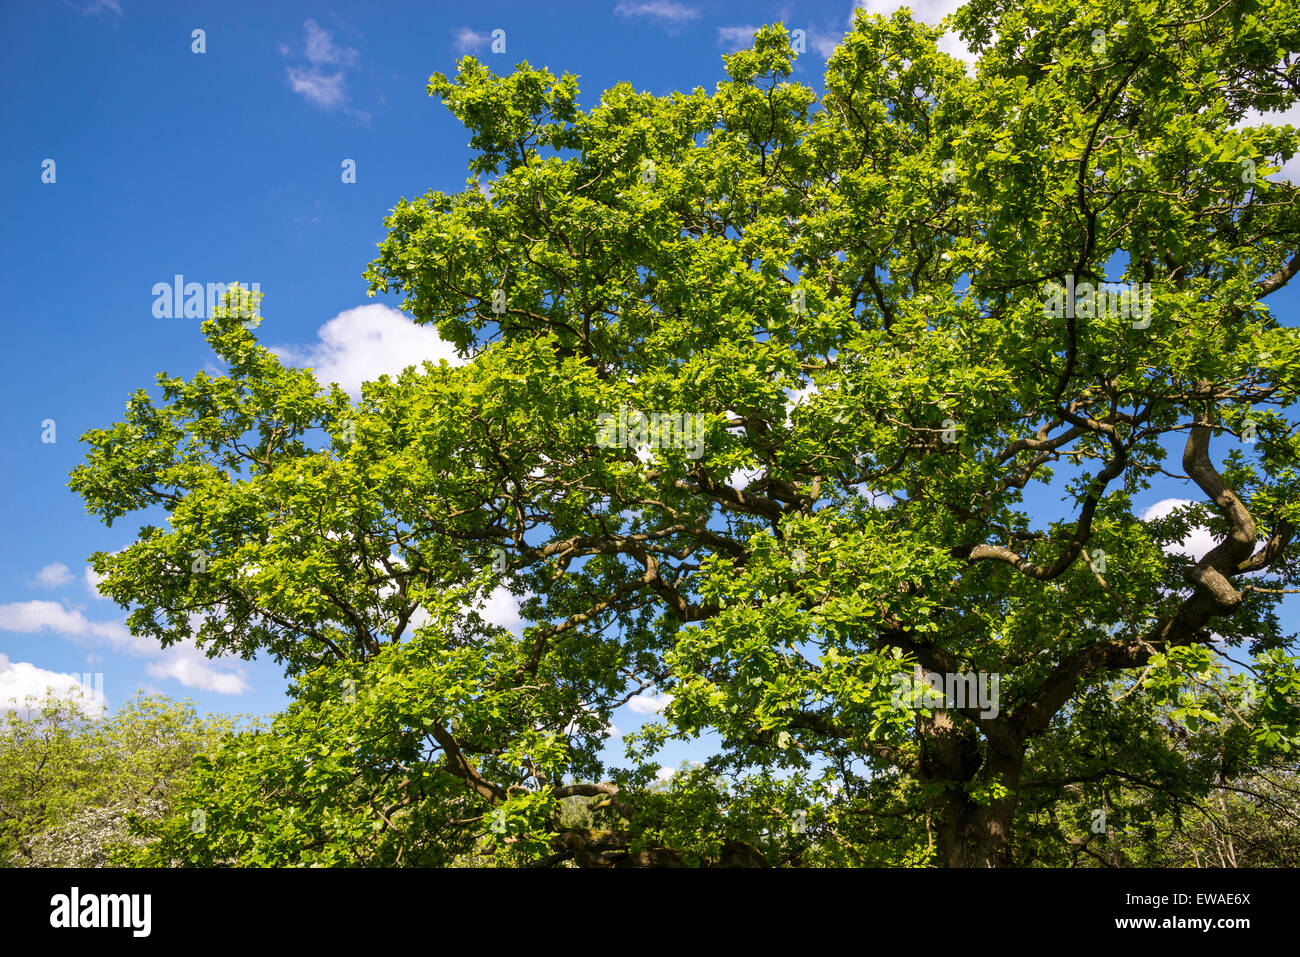 Buscando en las ramas de un árbol de roble inglés maduro a principios del verano de verdor. Foto de stock